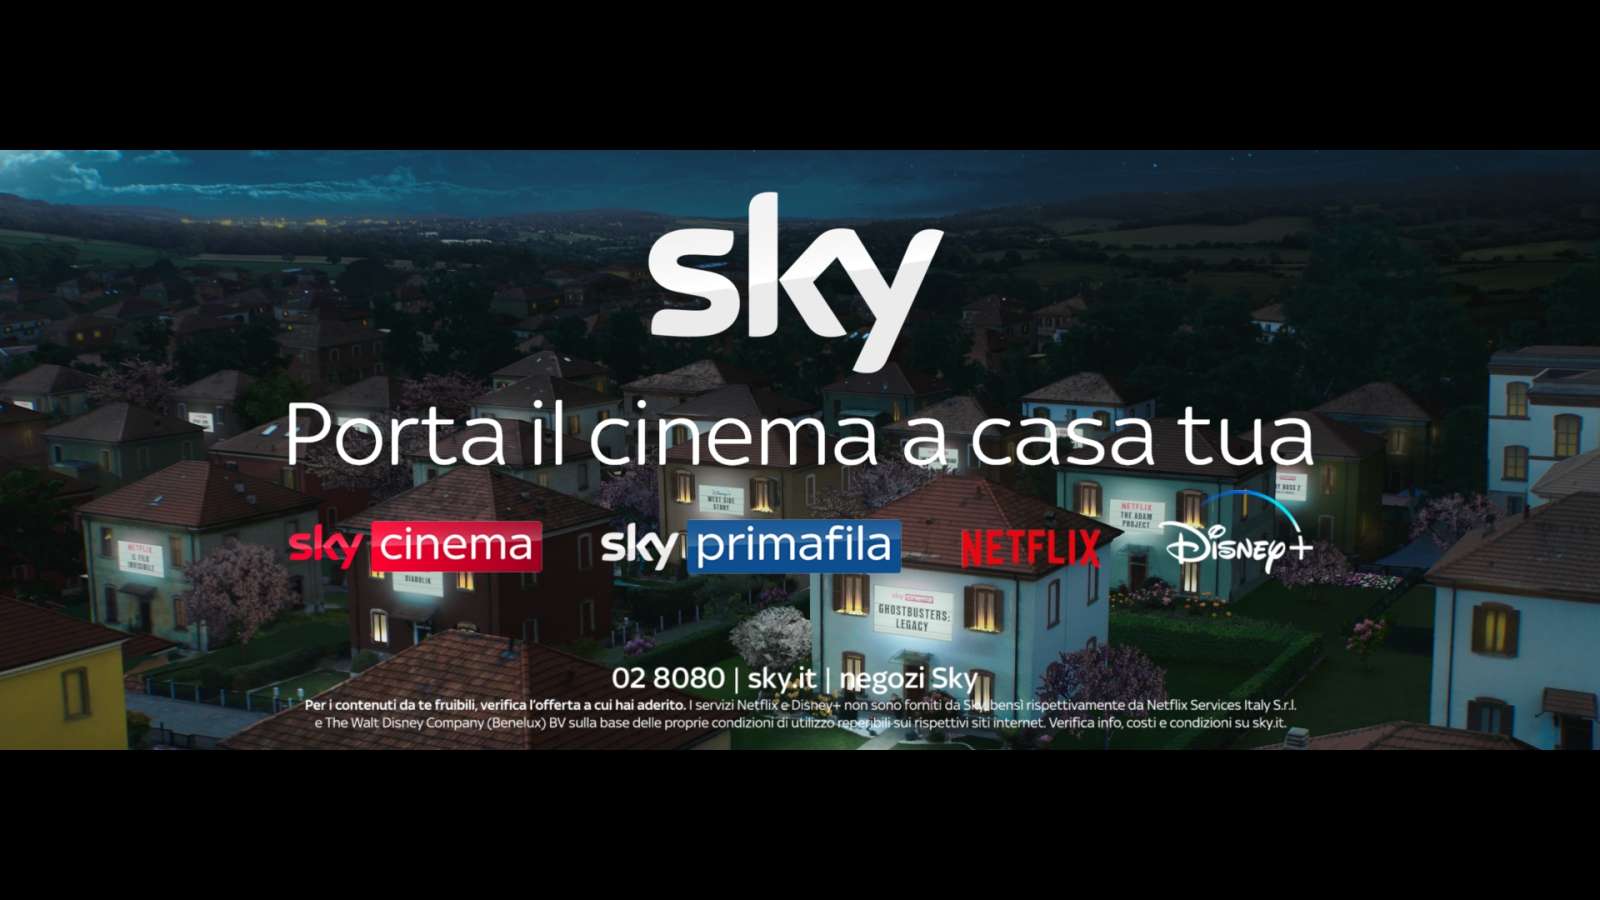 «Sky porta il cinema a casa tua» 200 prime visioni e con SkyQ anche Netflix e Disney